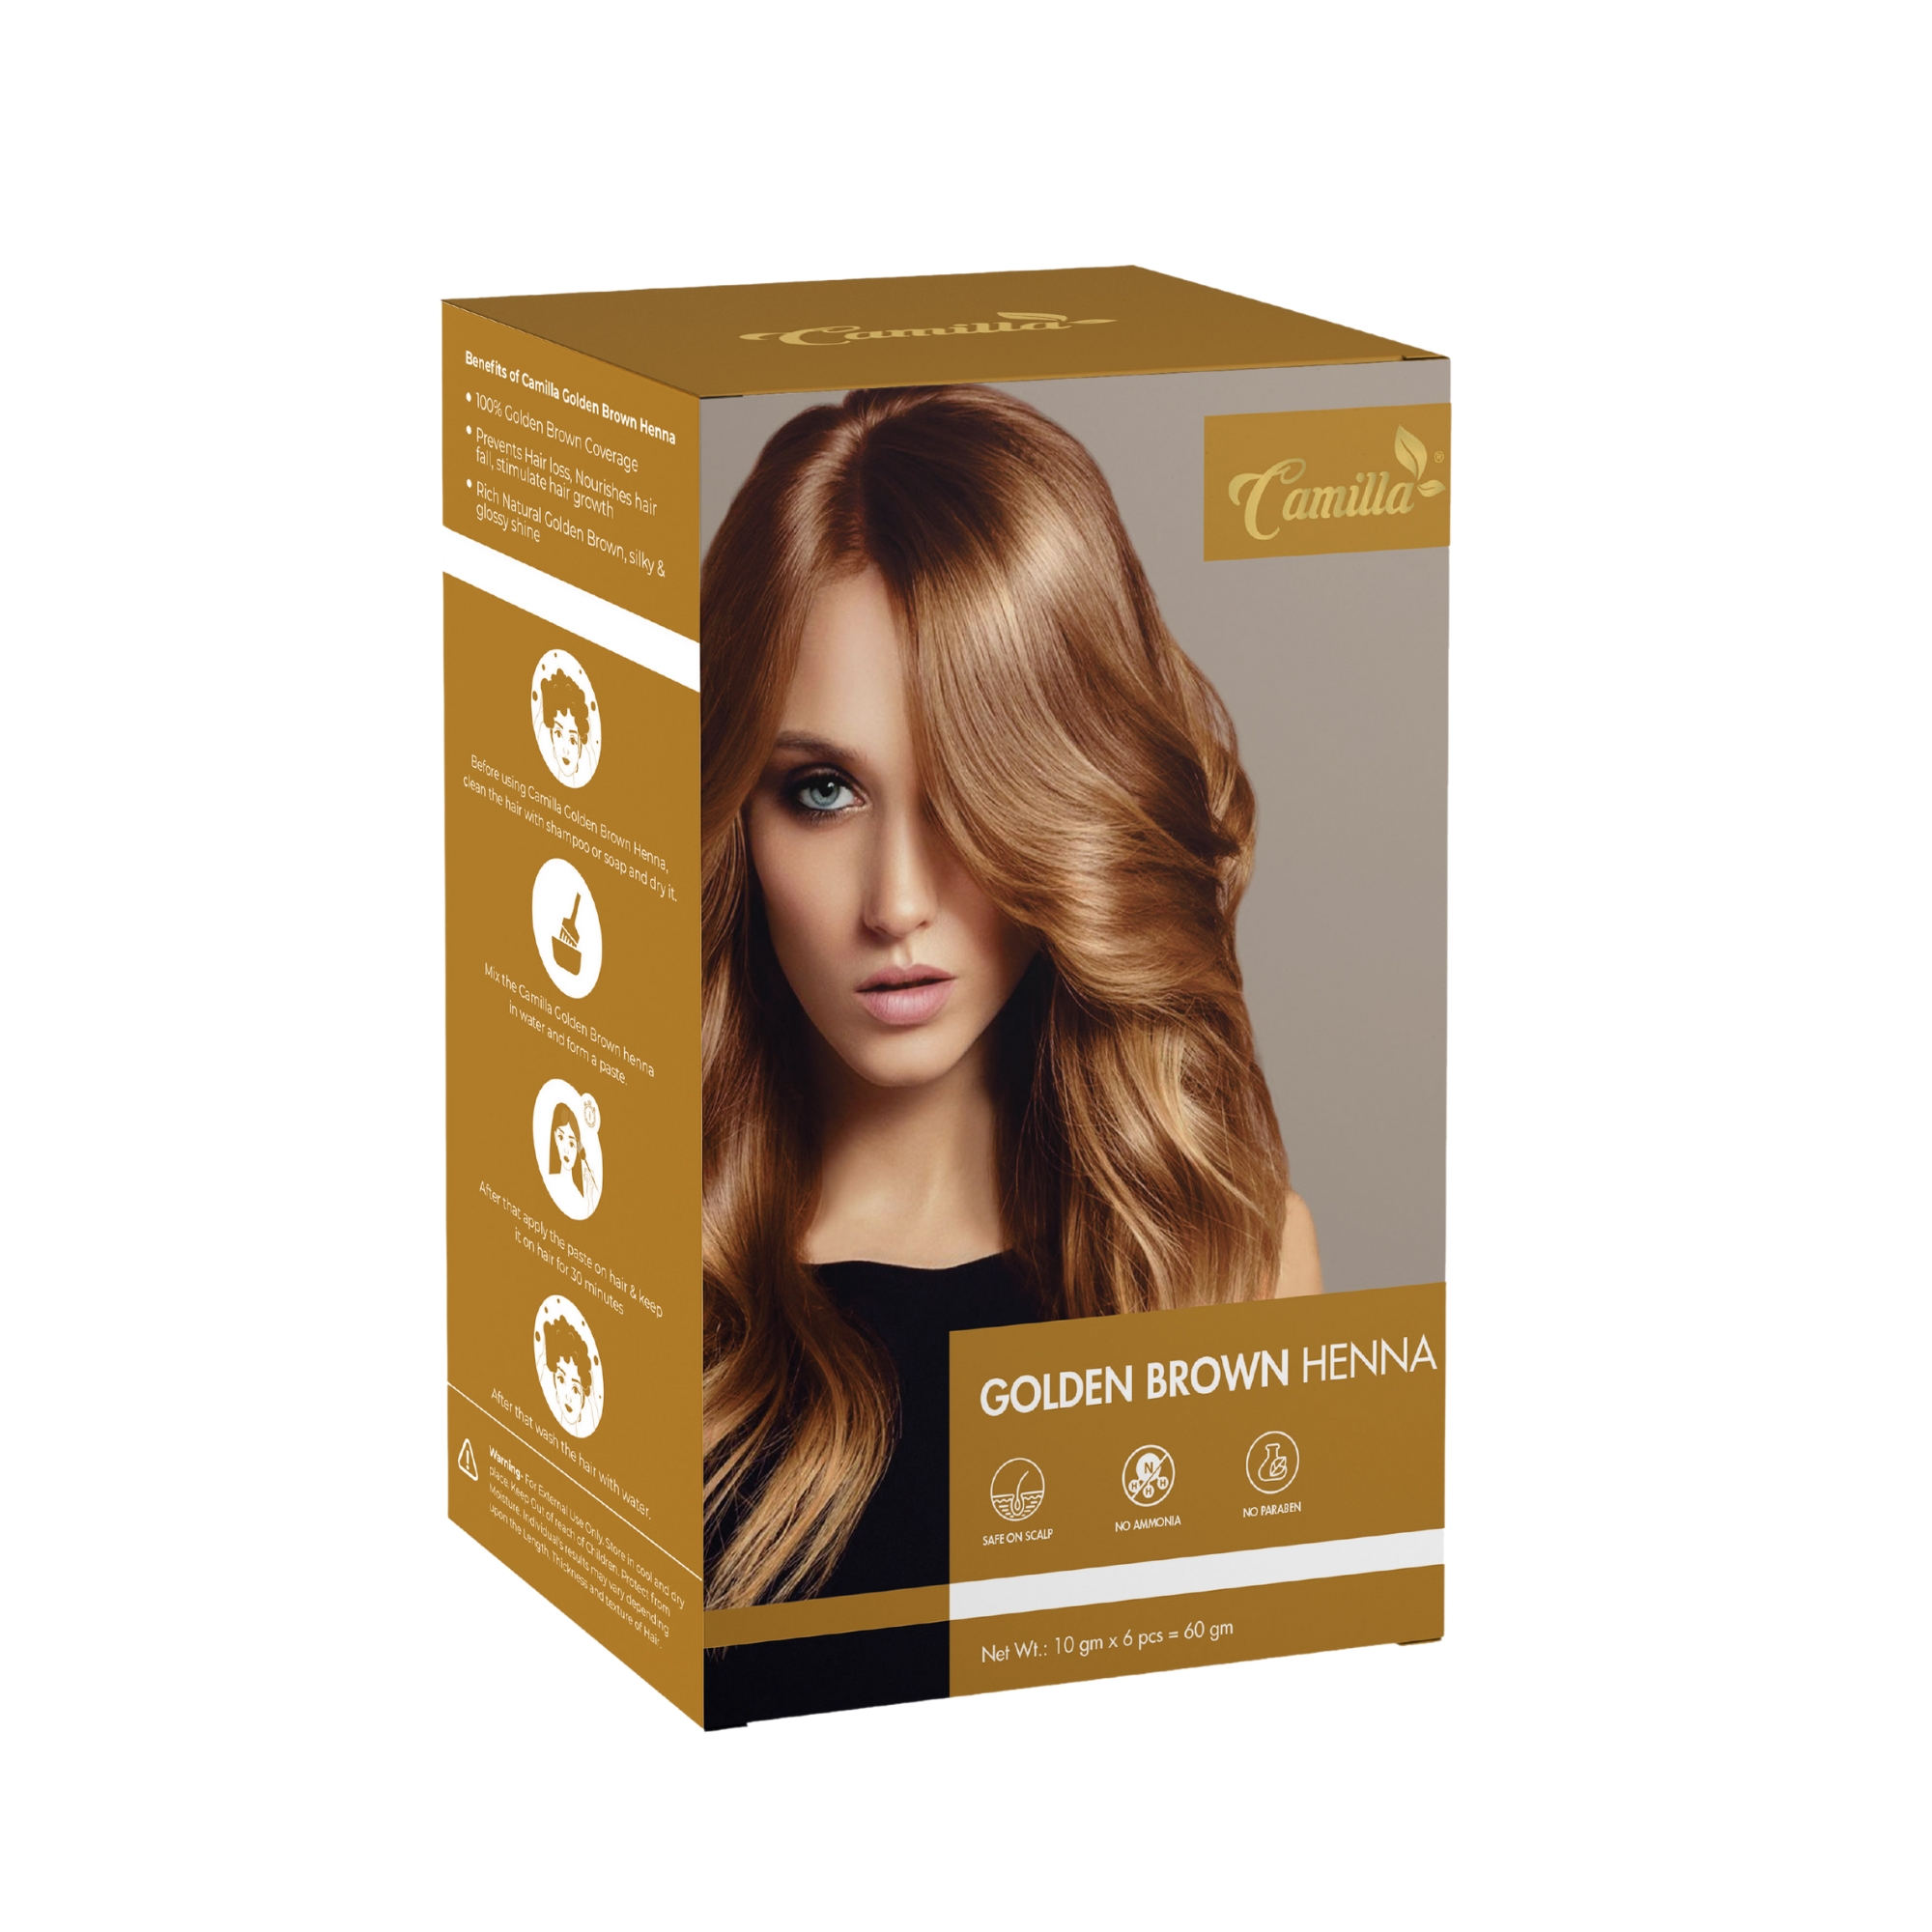 Camilla Golden Brown Hair Color | Best Henna Based Golden Brown Hair Color  Gives You 100% Grey Coverage